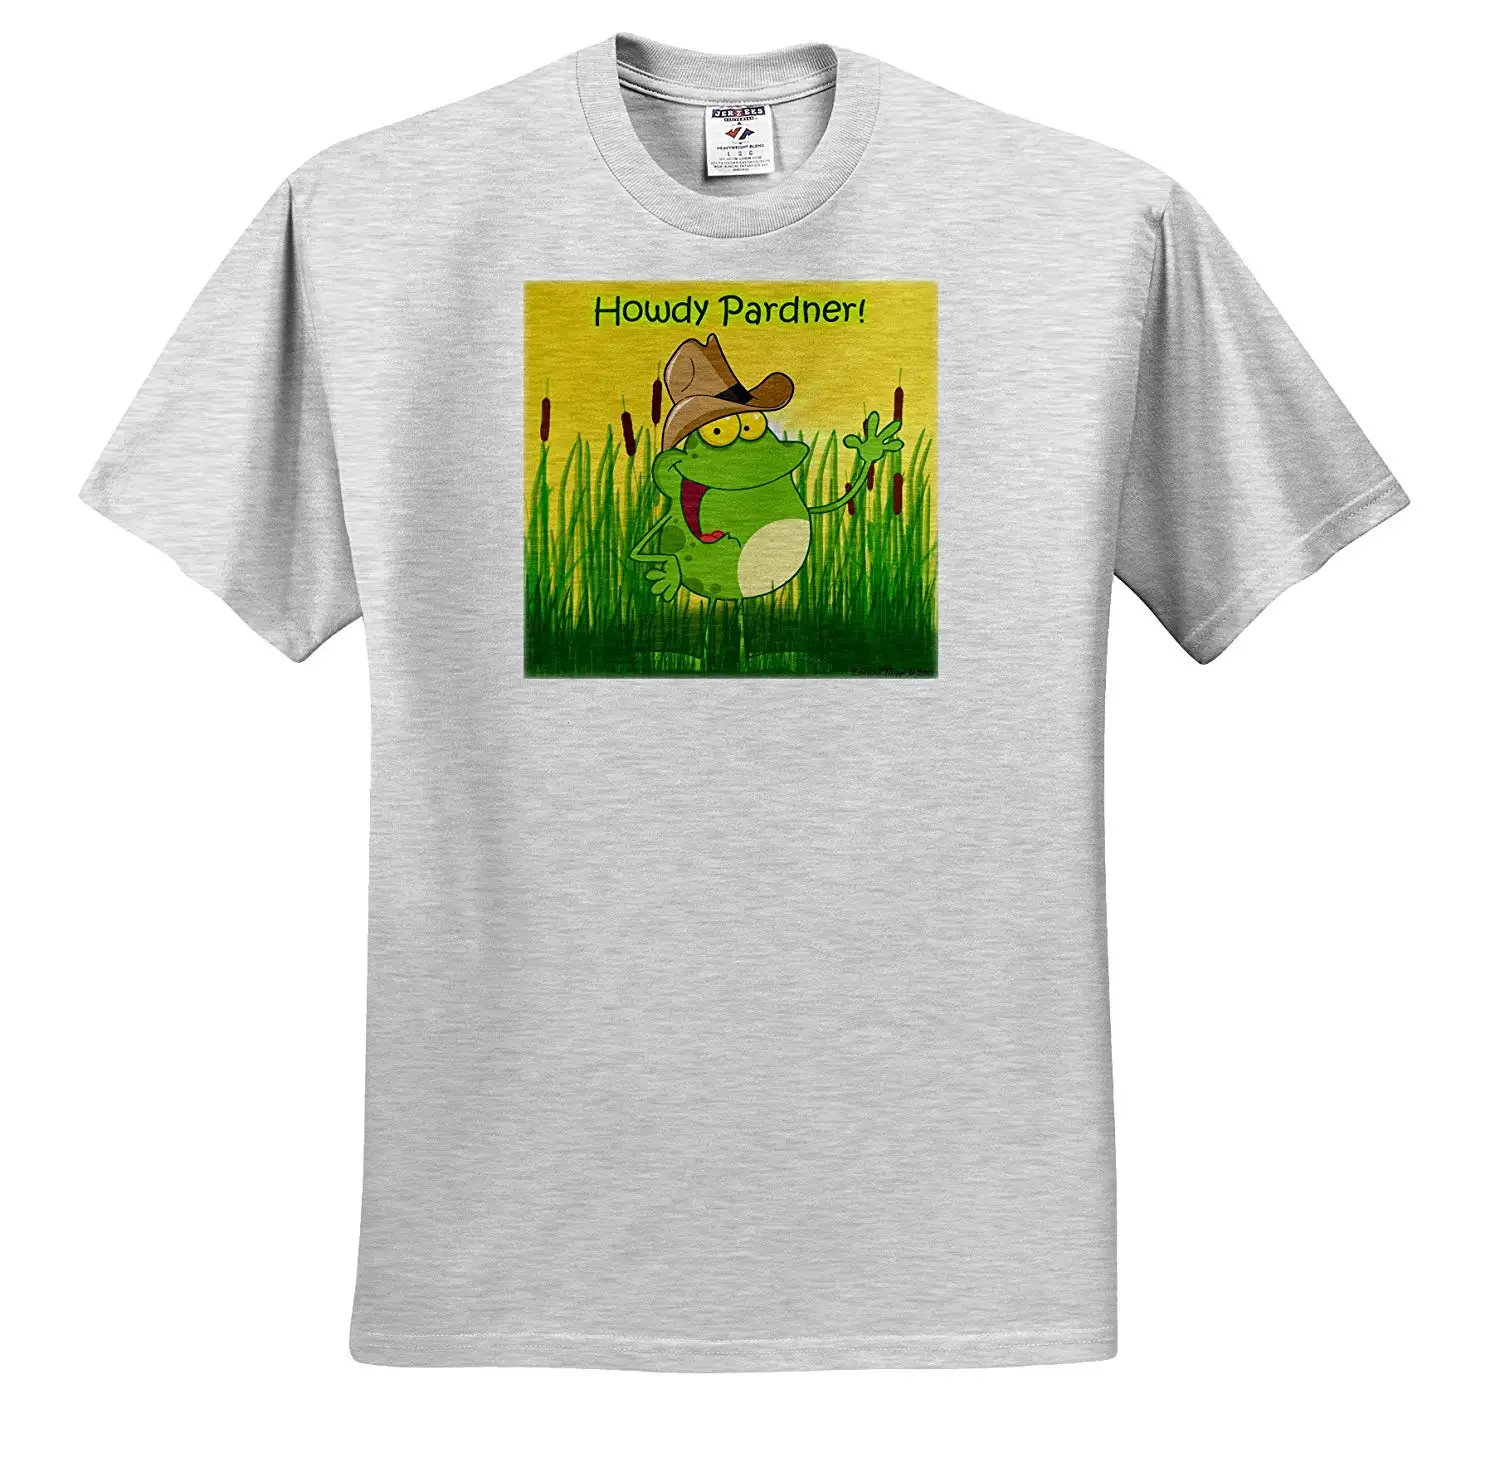 Edmond Хогге Jr лягушки-Западная лягушка во время вокала-футболки-взрослая